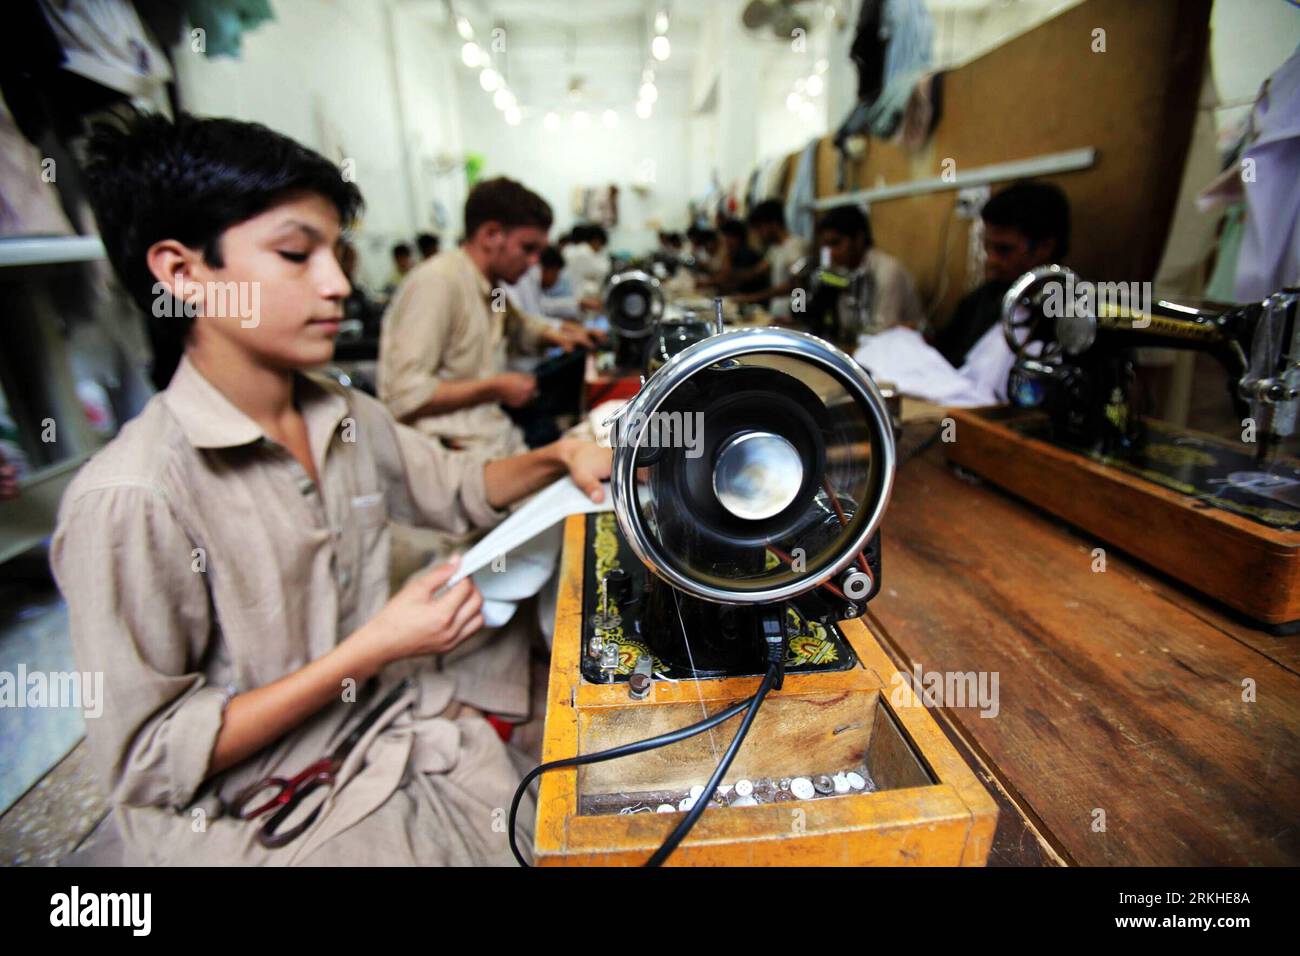 Bildnummer: 55810254 Datum: 22.08.2011 Copyright: imago/Xinhua (110822) -- PESHAWAR, 22. August 2011 (Xinhua) -- Mitarbeiter einer lokalen Textilfabrik nähen am 22. August 2011 Kleidung im nordwestpakistanischen Peshawar. Angesichts einer chronischen Energiekrise in Pakistan stimmen viele Textilhersteller im Land mit den Füßen ab und verlegen ihre Produktionsstätten nach Bangladesch. (Xinhua/Umar Qayyum)(yt) PAKISTAN-PESHAWAR-TEXTILKRISE PUBLICATIONxNOTxINxCHN Gesellschaft Wirtschaft Arbeitswelten Textilindustrie Näherei Nähen Nähmaschine Mann xda x0x 2011 quer Bildnummer 55810254 Datum 22 08 Stockfoto